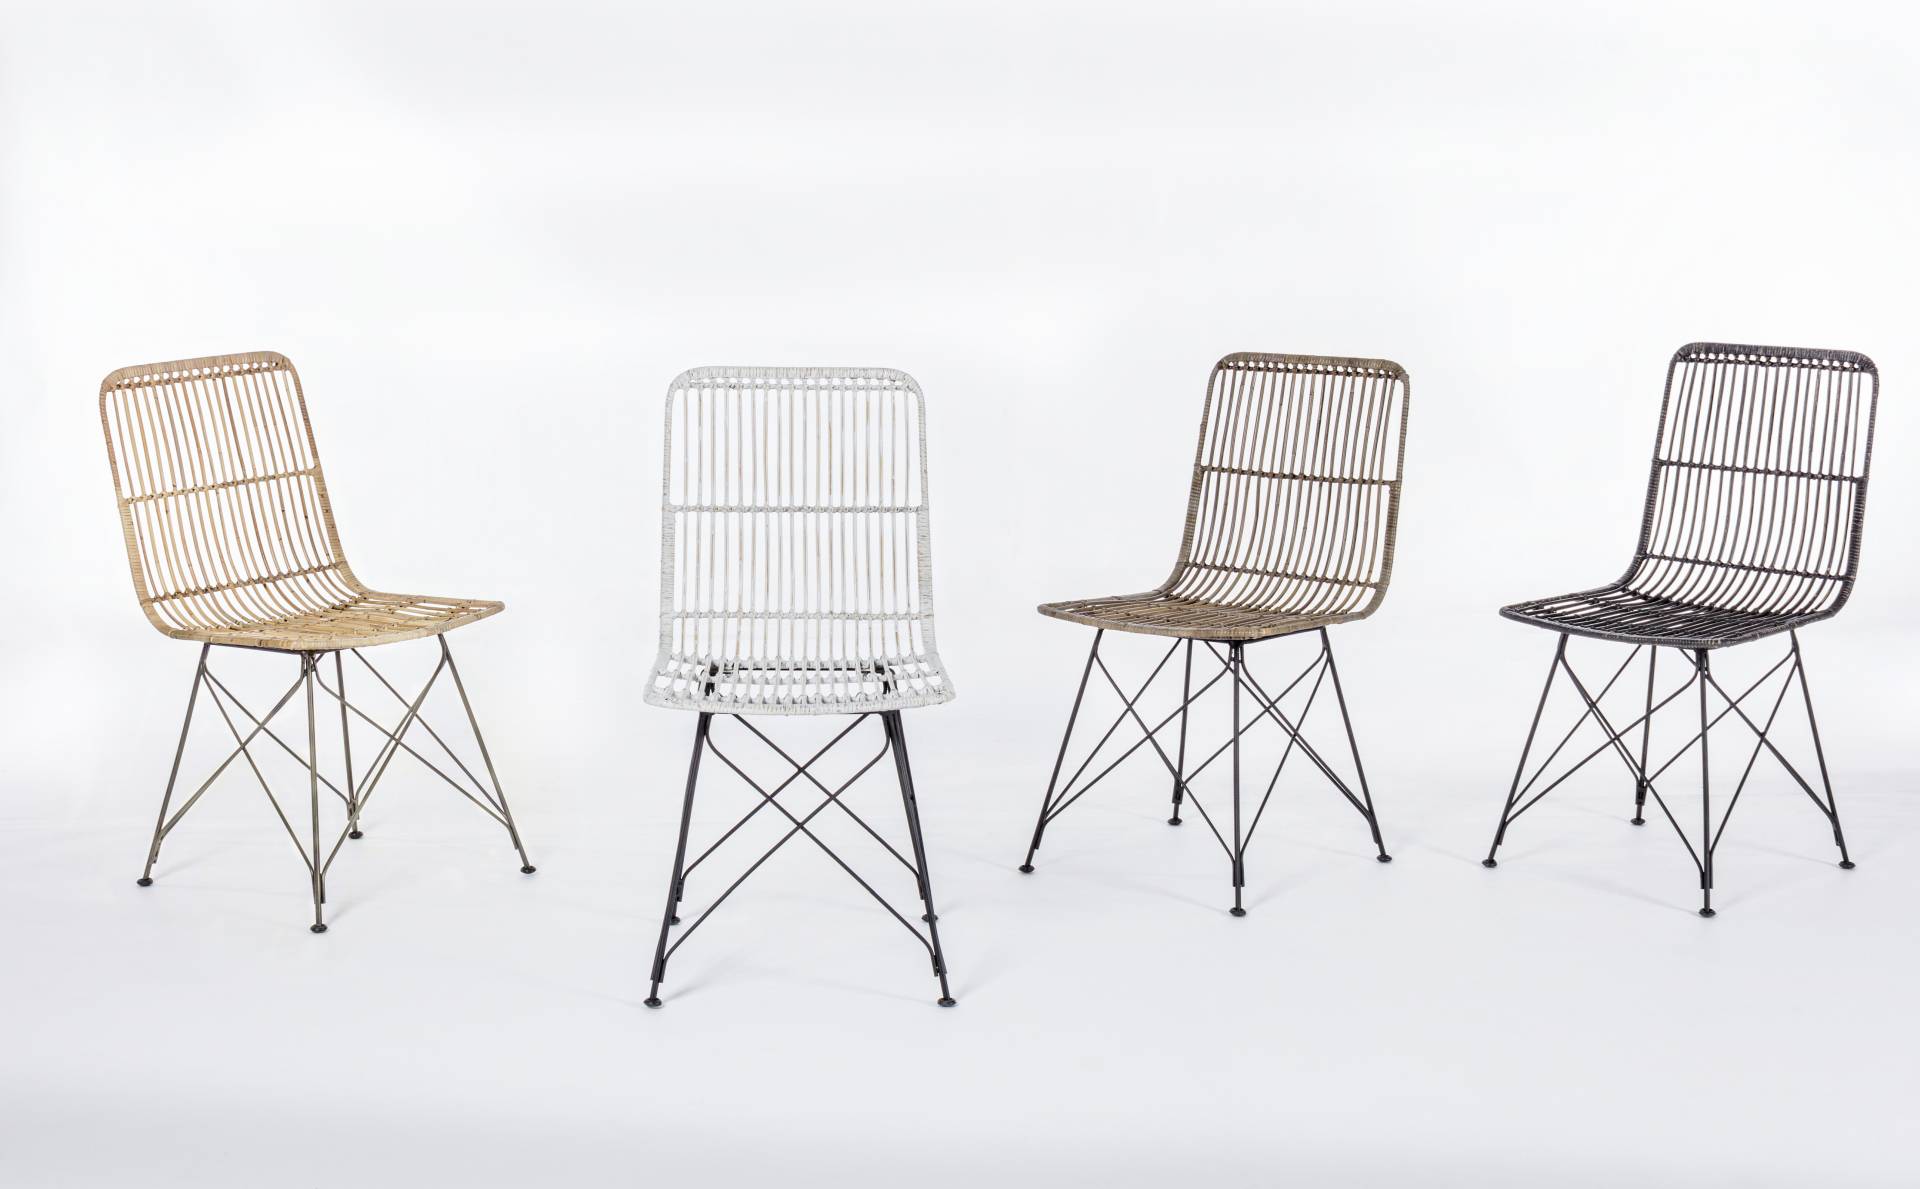 Der Stuhl Lucila Kabu überzeugt mit seinem modernem Design.Gefertigt wurde der Stuhl aus einem Kabugeflecht, welches einen natürlichen Farbton besitzt. Das Gestell ist aus Metall und hat eine Schwarze Farbe. Die Sitzhöhe beträgt 45 cm.